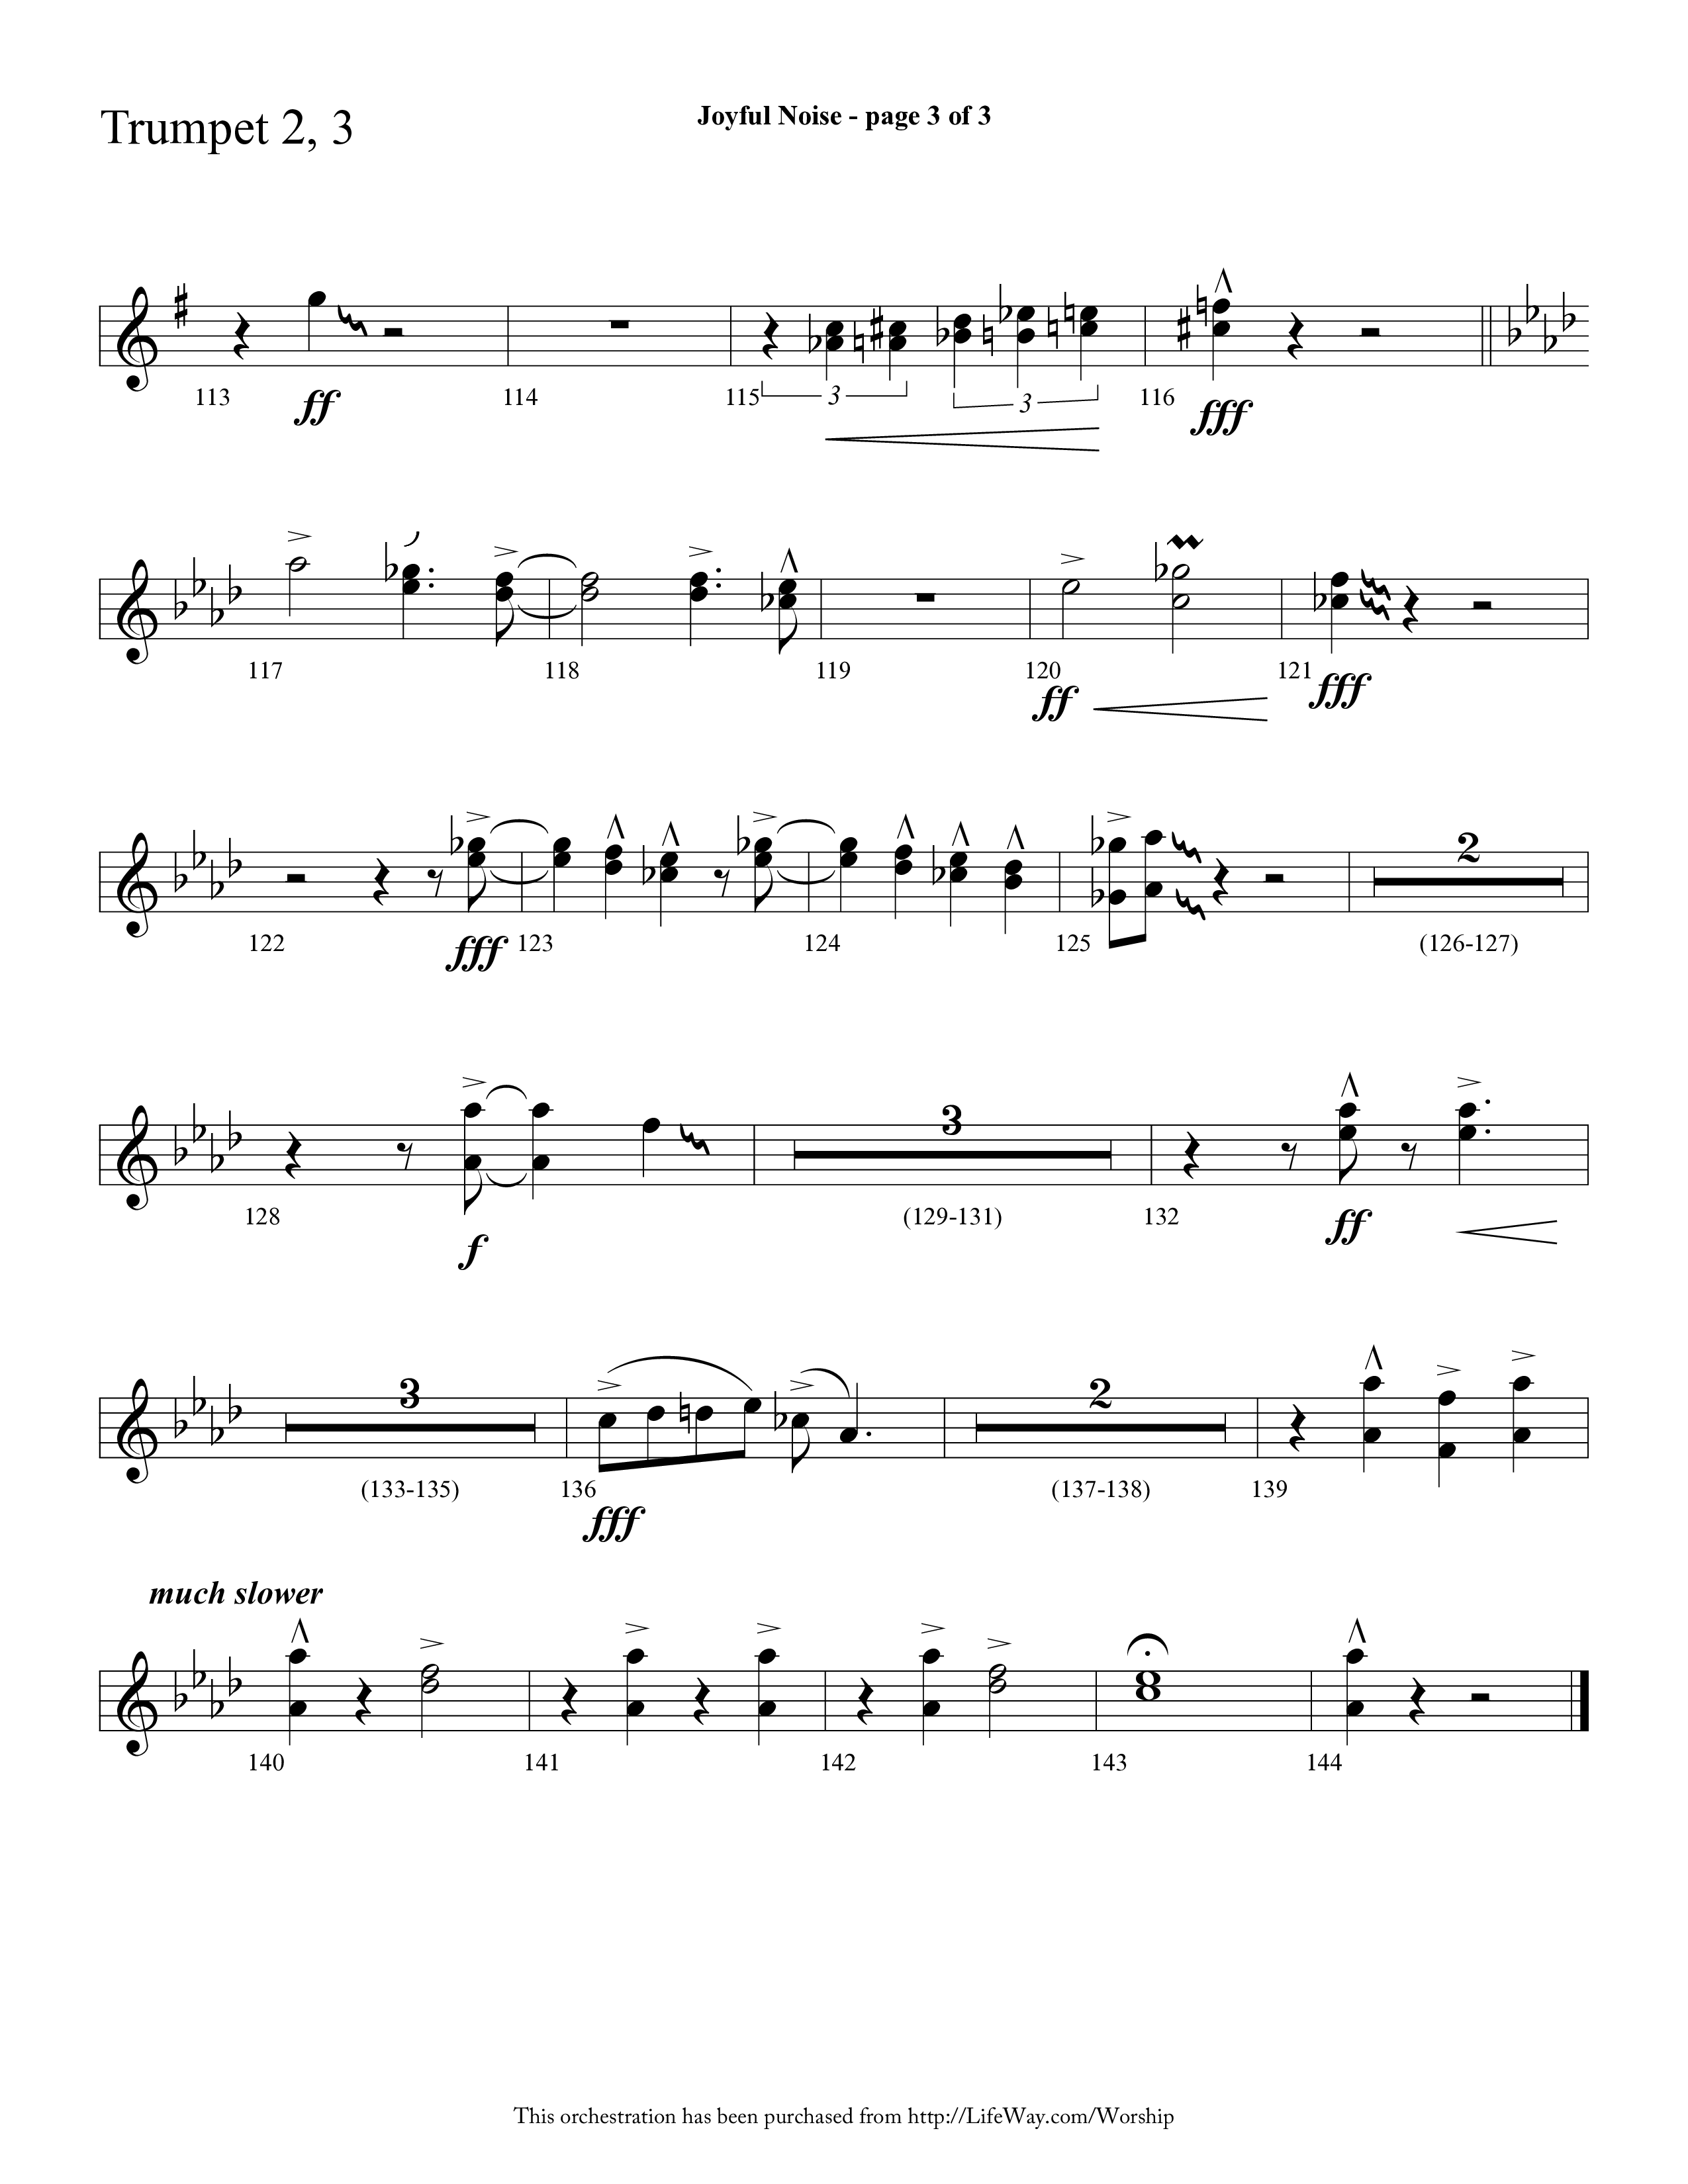 Joyful Noise (Choral Anthem SATB) Trumpet 2/3 (Lifeway Choral / Arr. Cliff Duren)